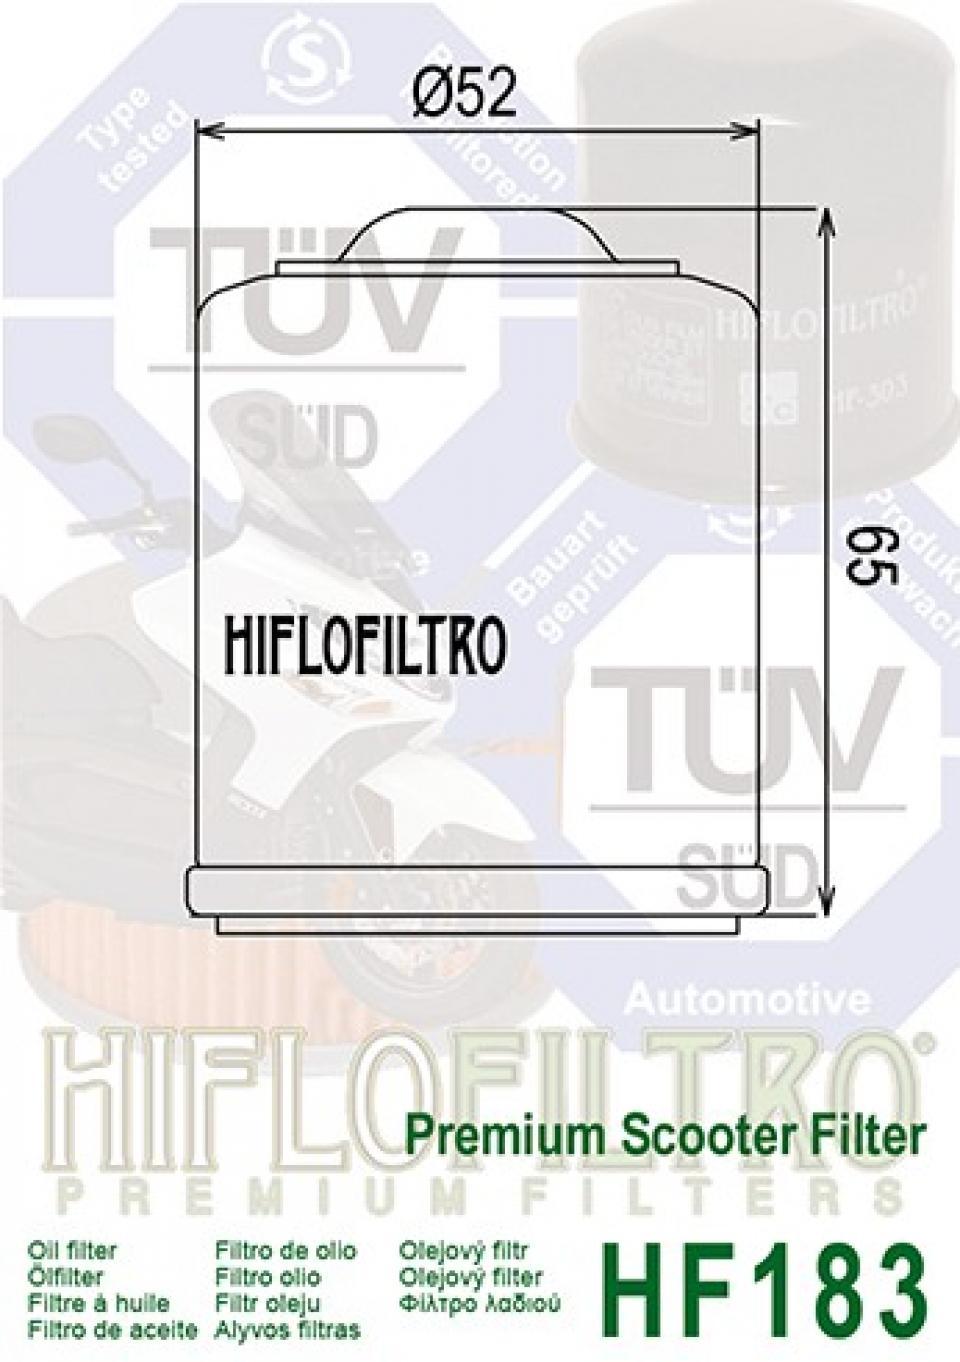 Filtre à huile Hiflofiltro pour Scooter Piaggio 125 Vespa Gts Ie Abs Euro4 2016 à 2017 Neuf